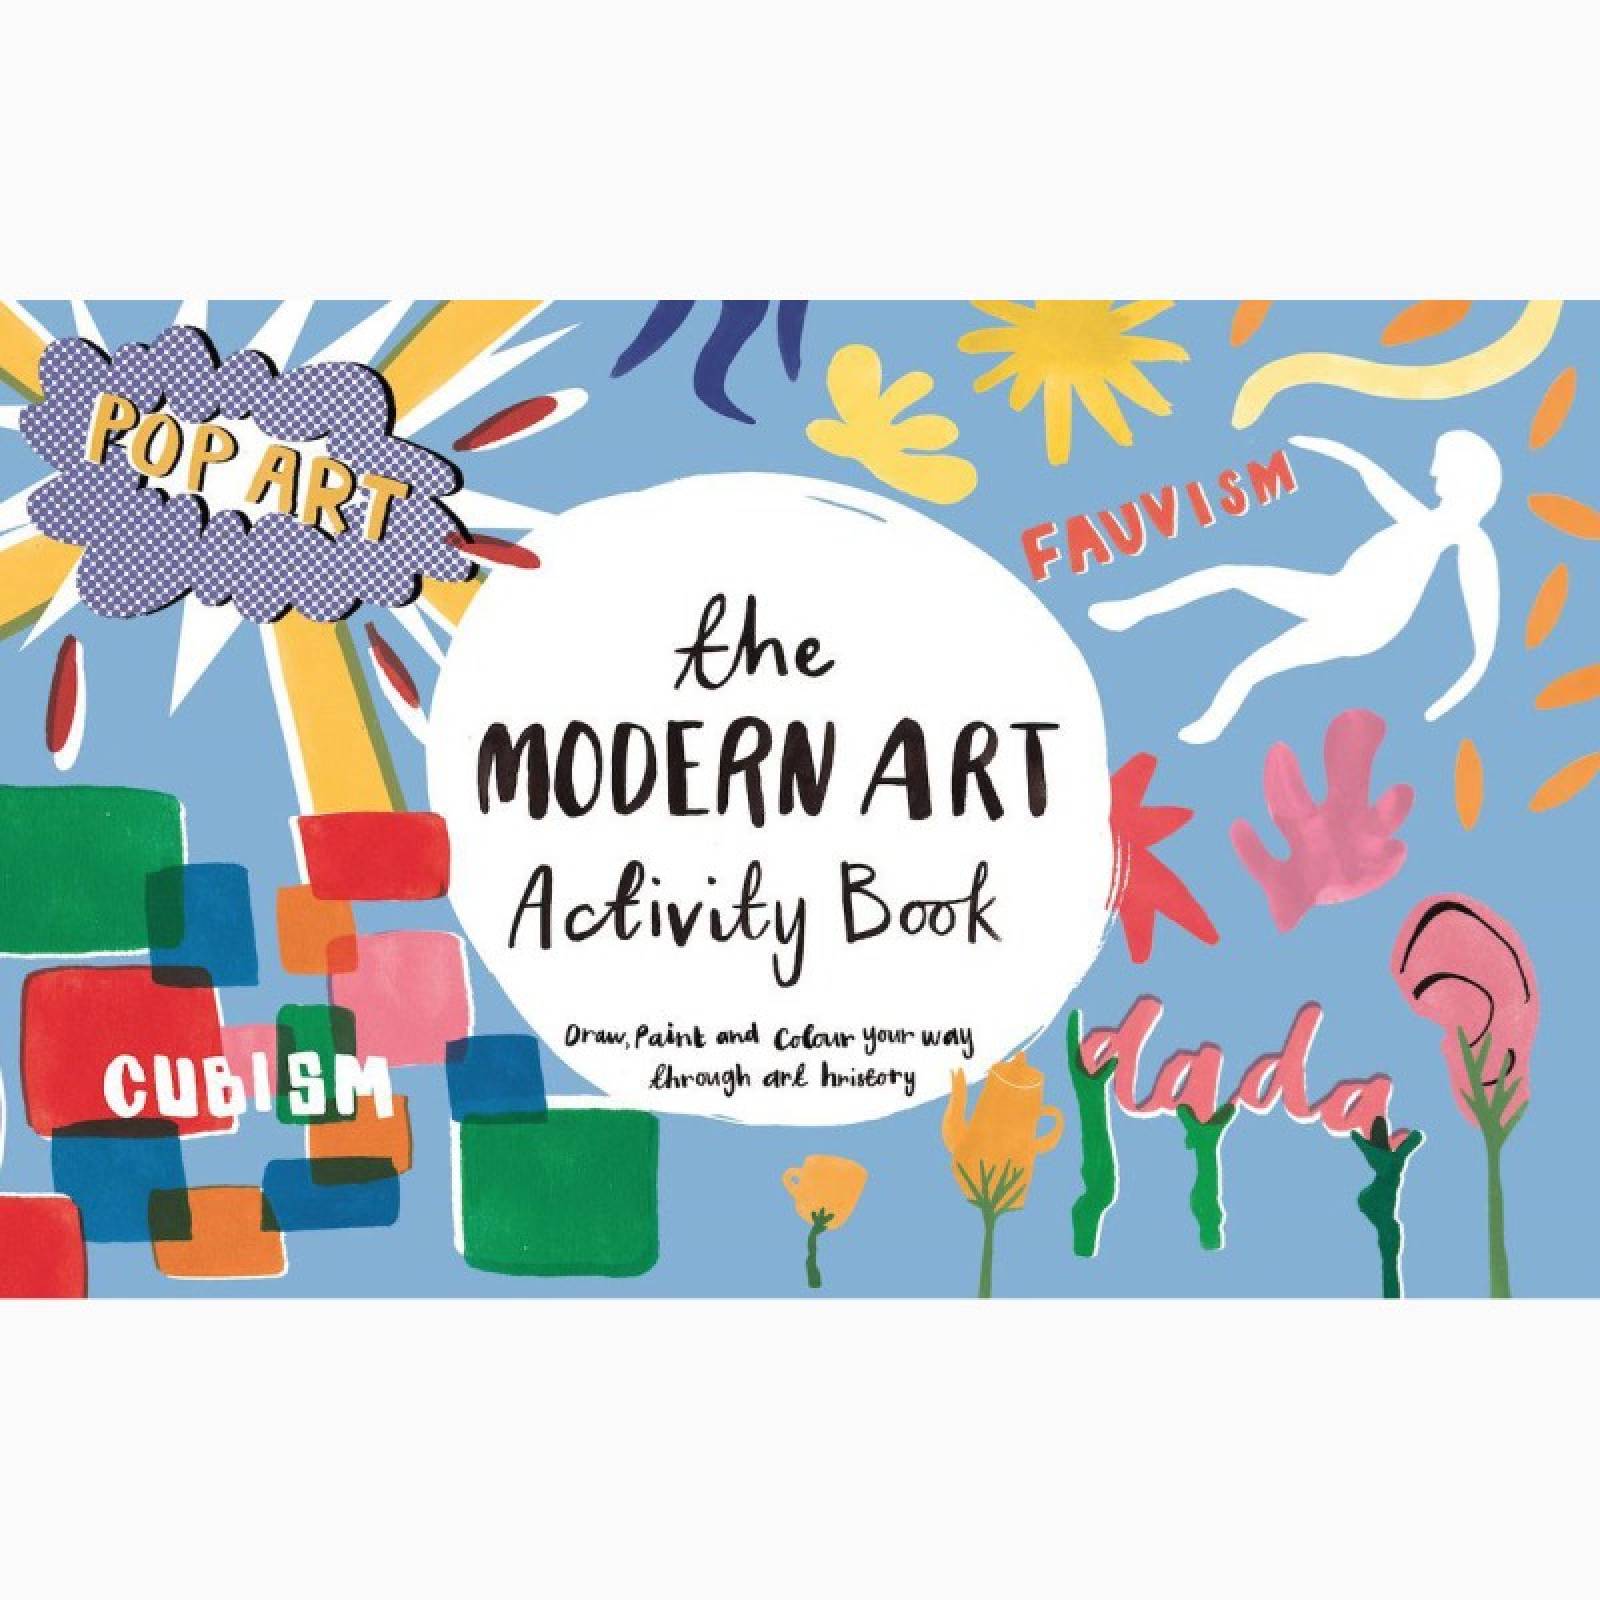 The Modern Art Activity Book thumbnails